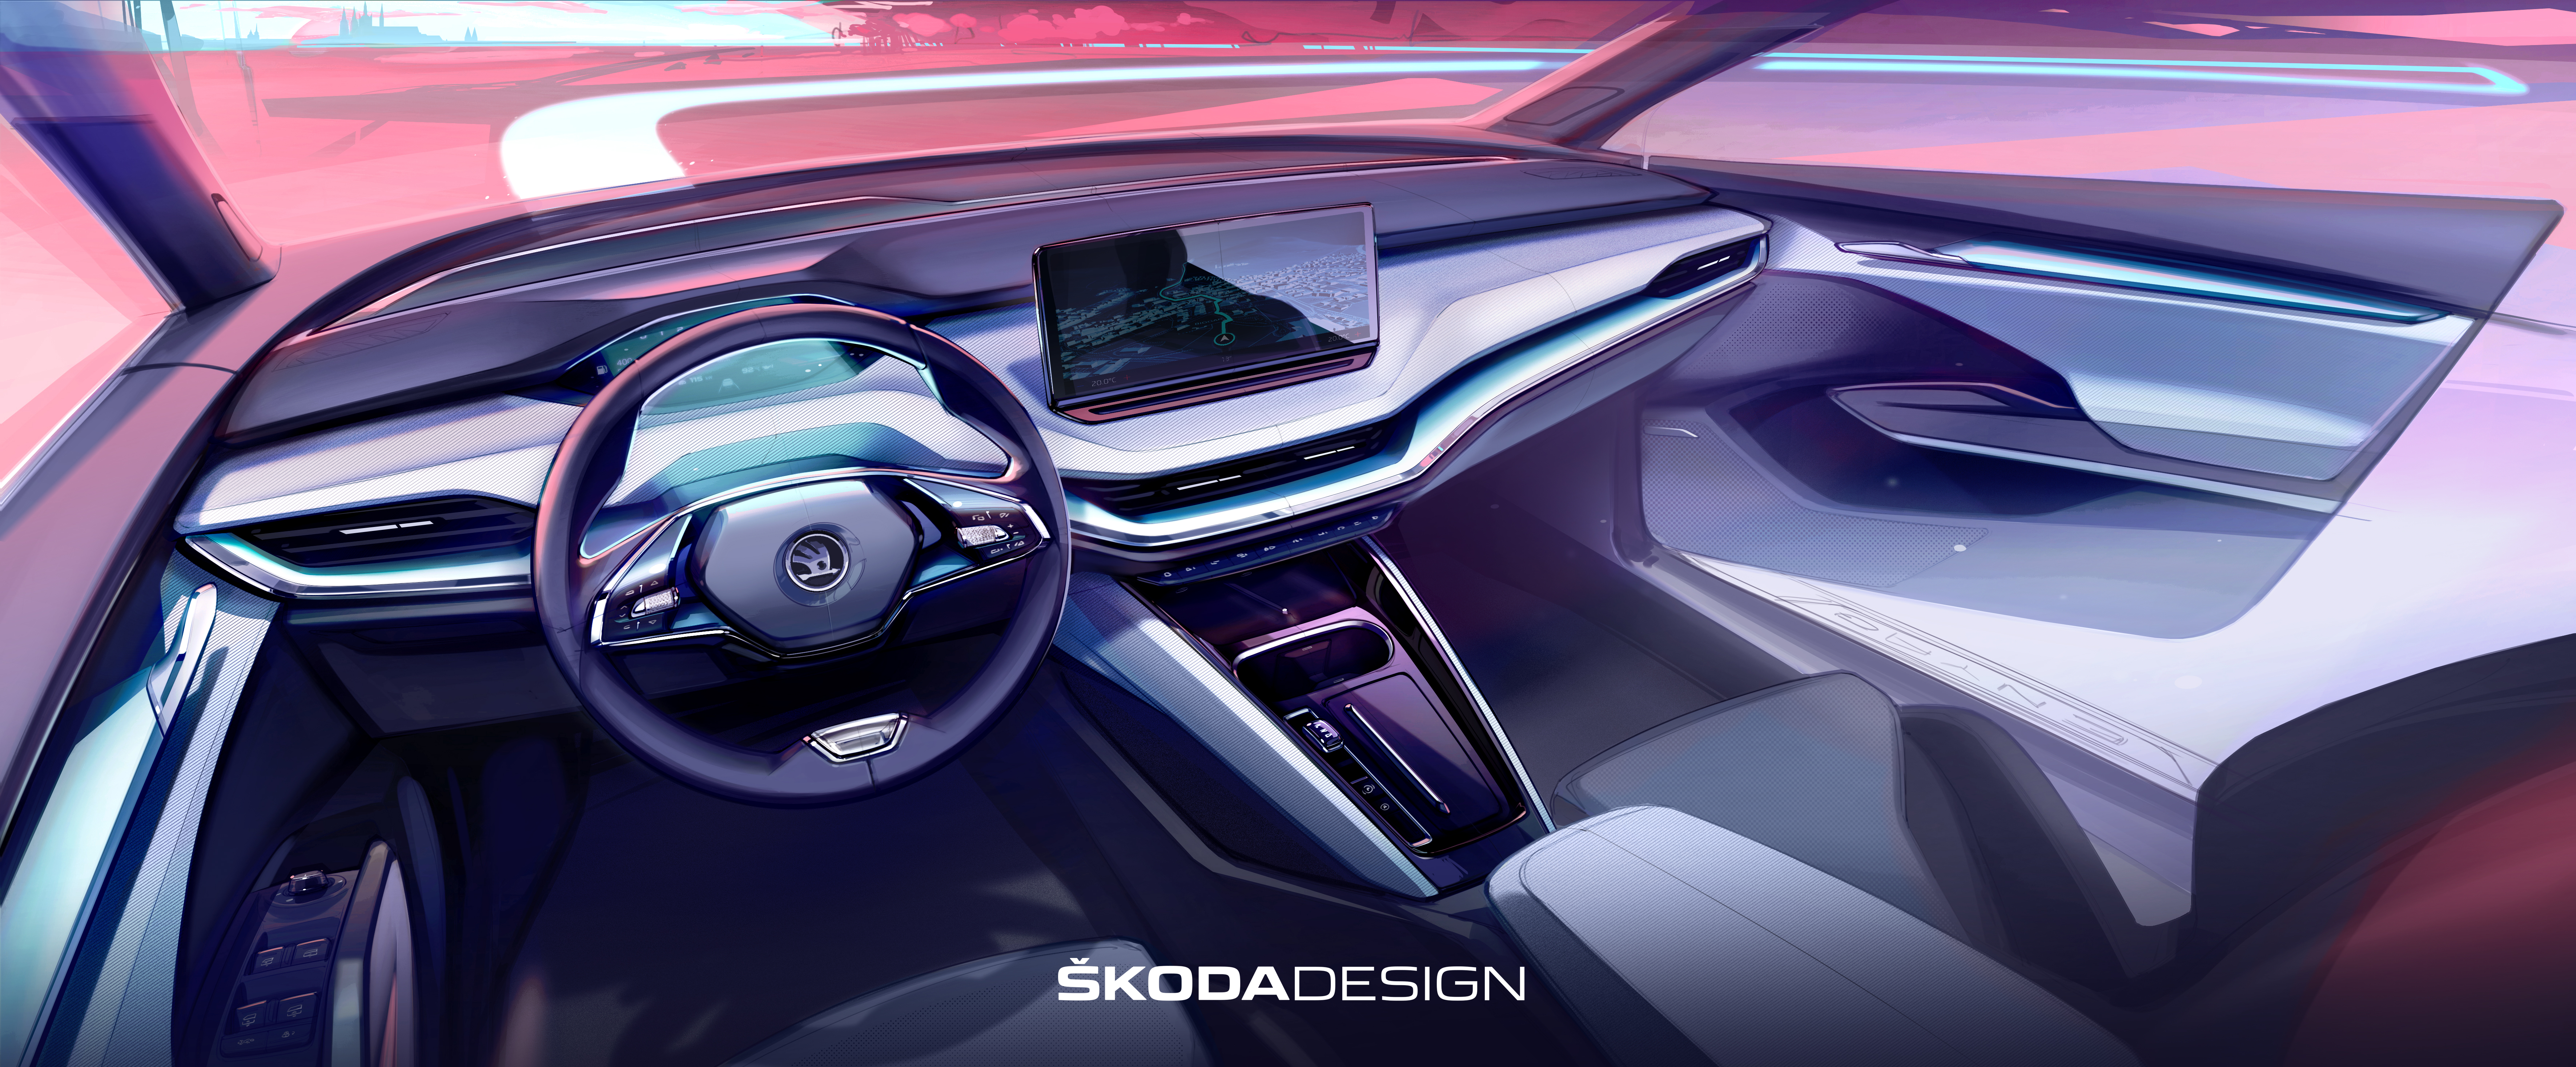 Škoda Enyaq iV prináša nový smer individualizácie interiéru